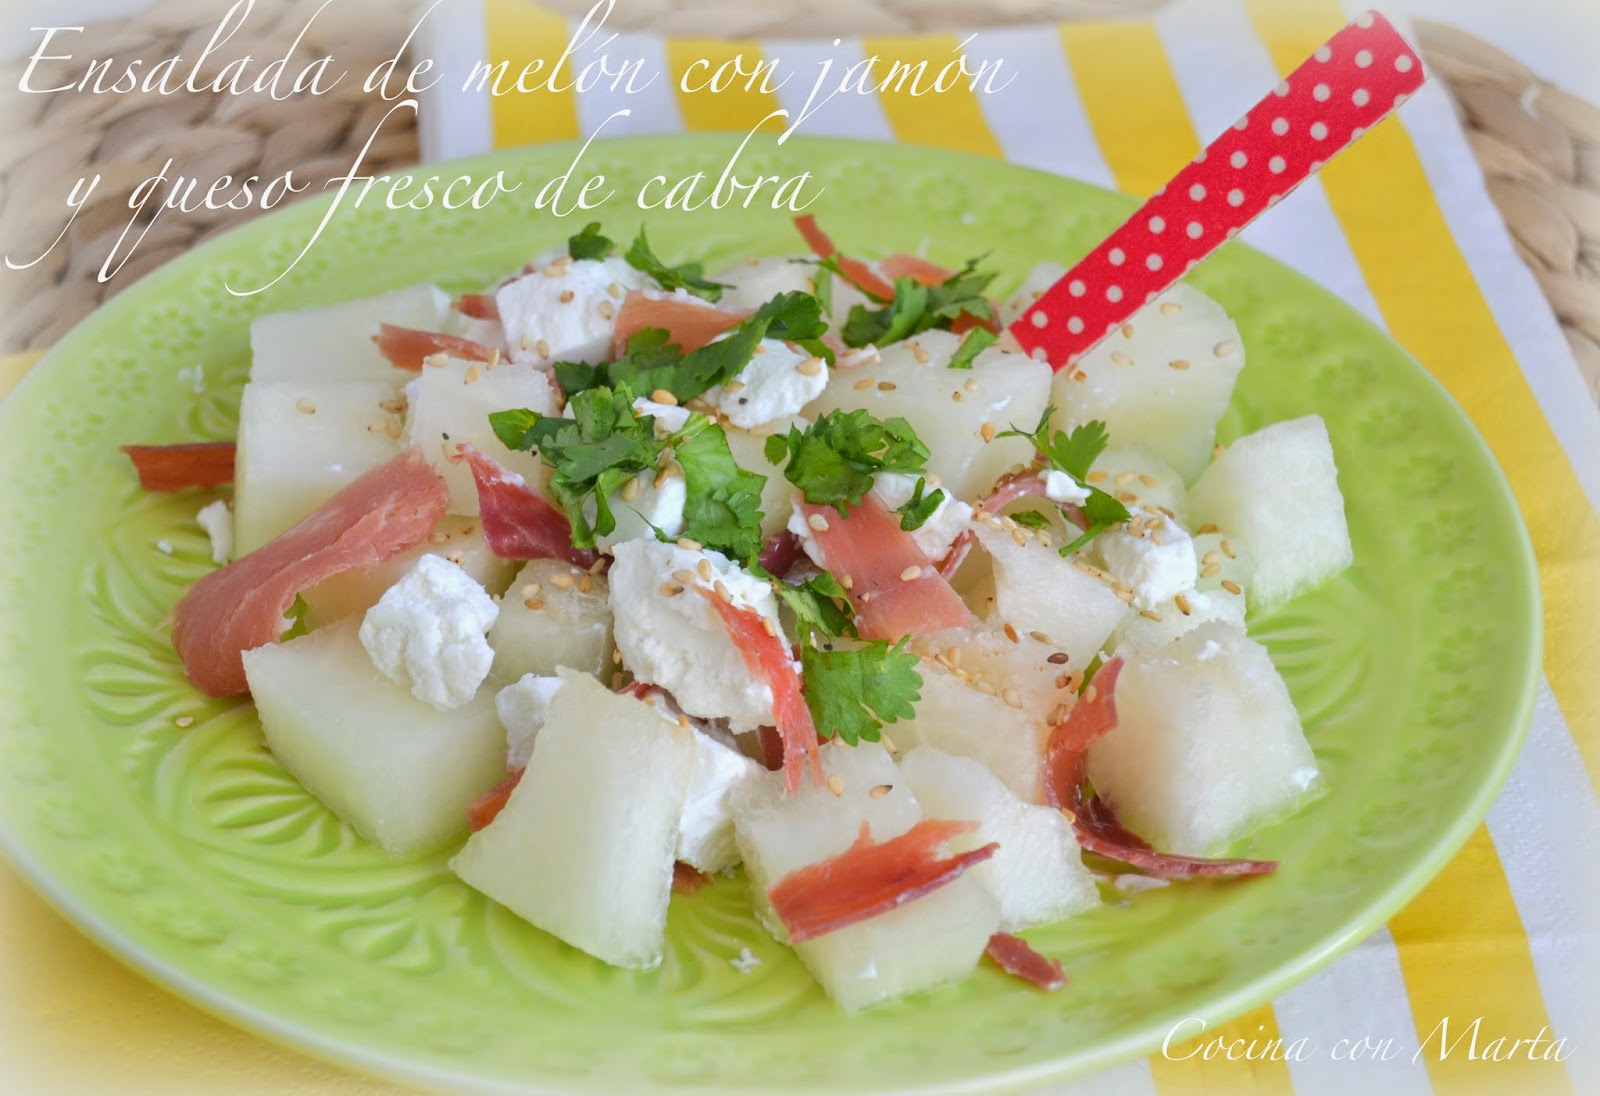 Ensalada de melón con jamón serrano y queso de cabra fresco. Receta ligera, sana y casera.